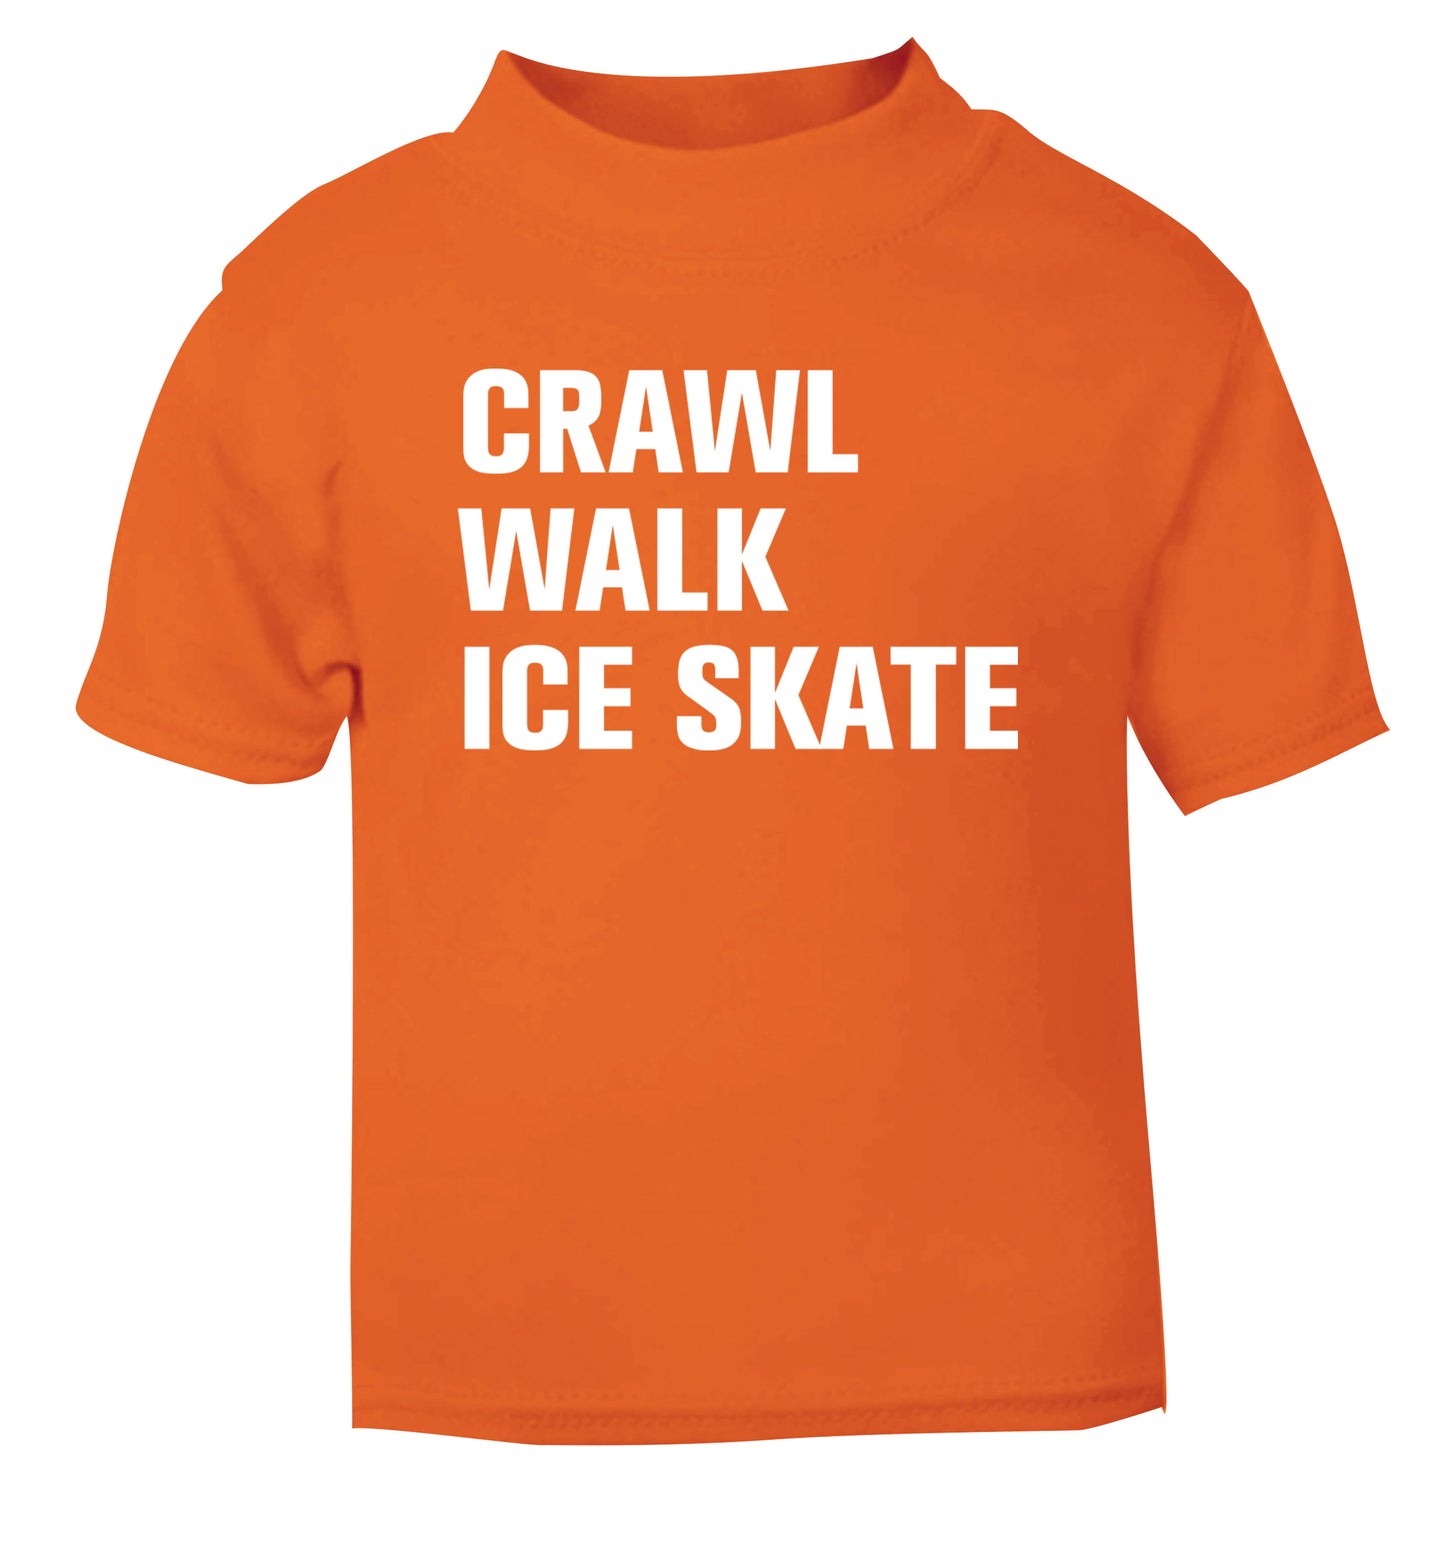 Crawl walk ice skate orange Baby Toddler Tshirt 2 Years